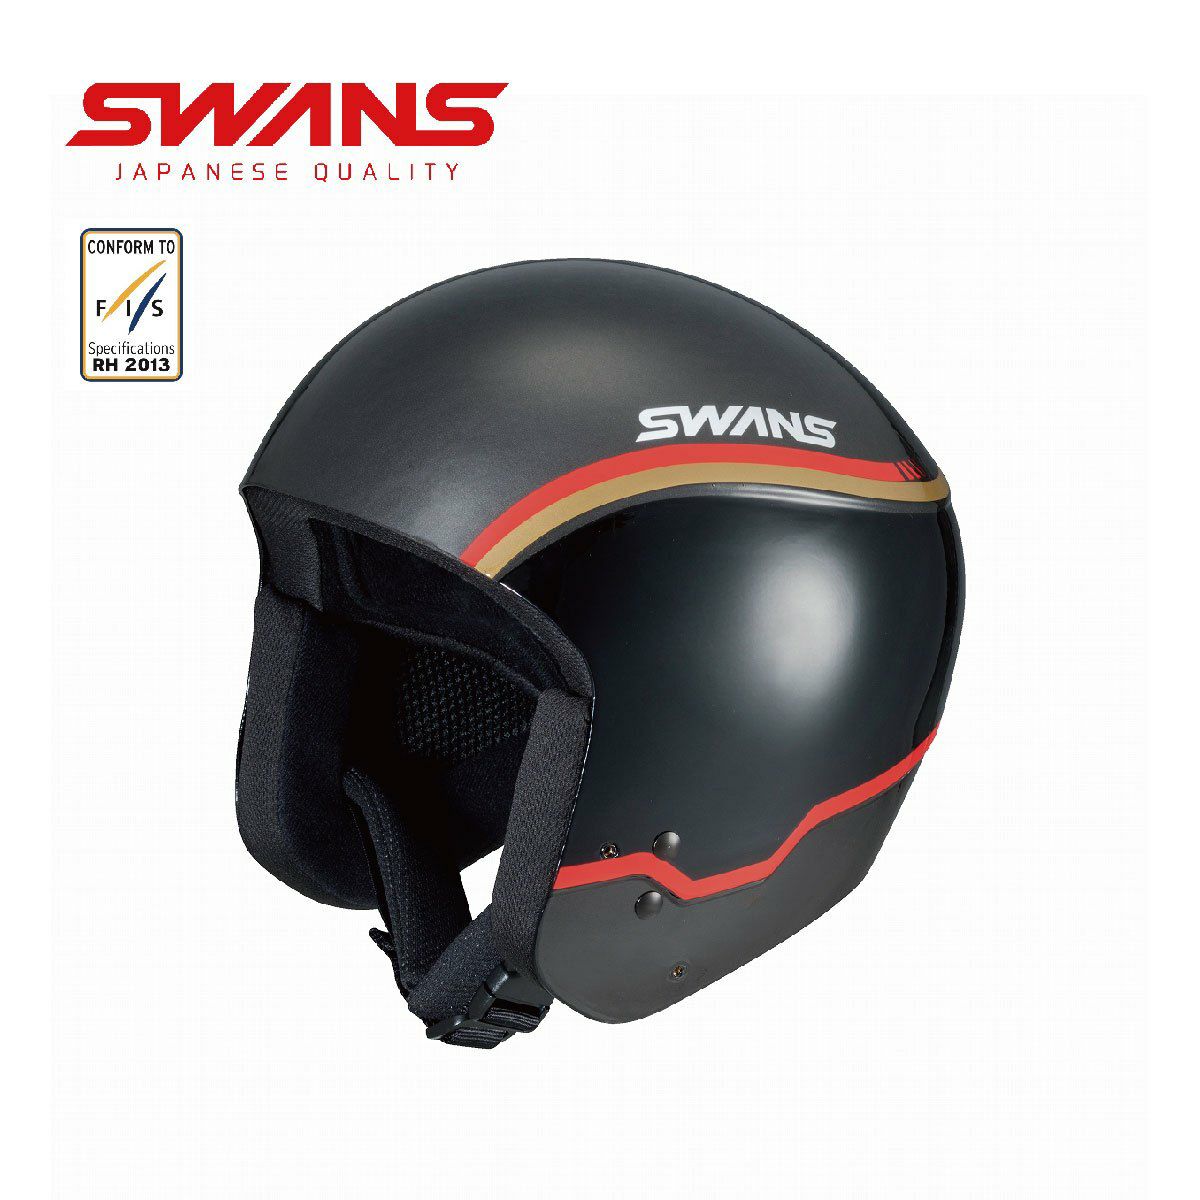 メーカー希望小売価格はメーカーカタログに基づいて掲載しています SWANS スワンズ スキーヘルメット■ HSR-95FIS RS FRPシャルで極限までの軽量化を実現したスペシャルFISレーシングモデル・チンガード（HA-23）取付け可（※別売り）・サイズ調整パッド付属・ASTM 2040認証・FIS RH 2013認証・ハードシェル・ライトウェイトシェル・サイズアジャスターパッド■カラー・BKGOL■サイズ・SM：54-57cm(550g) ※メーカー企画書の情報で商品登録を行っております。予告なしに商品名と仕様変更される場合がございます。v0